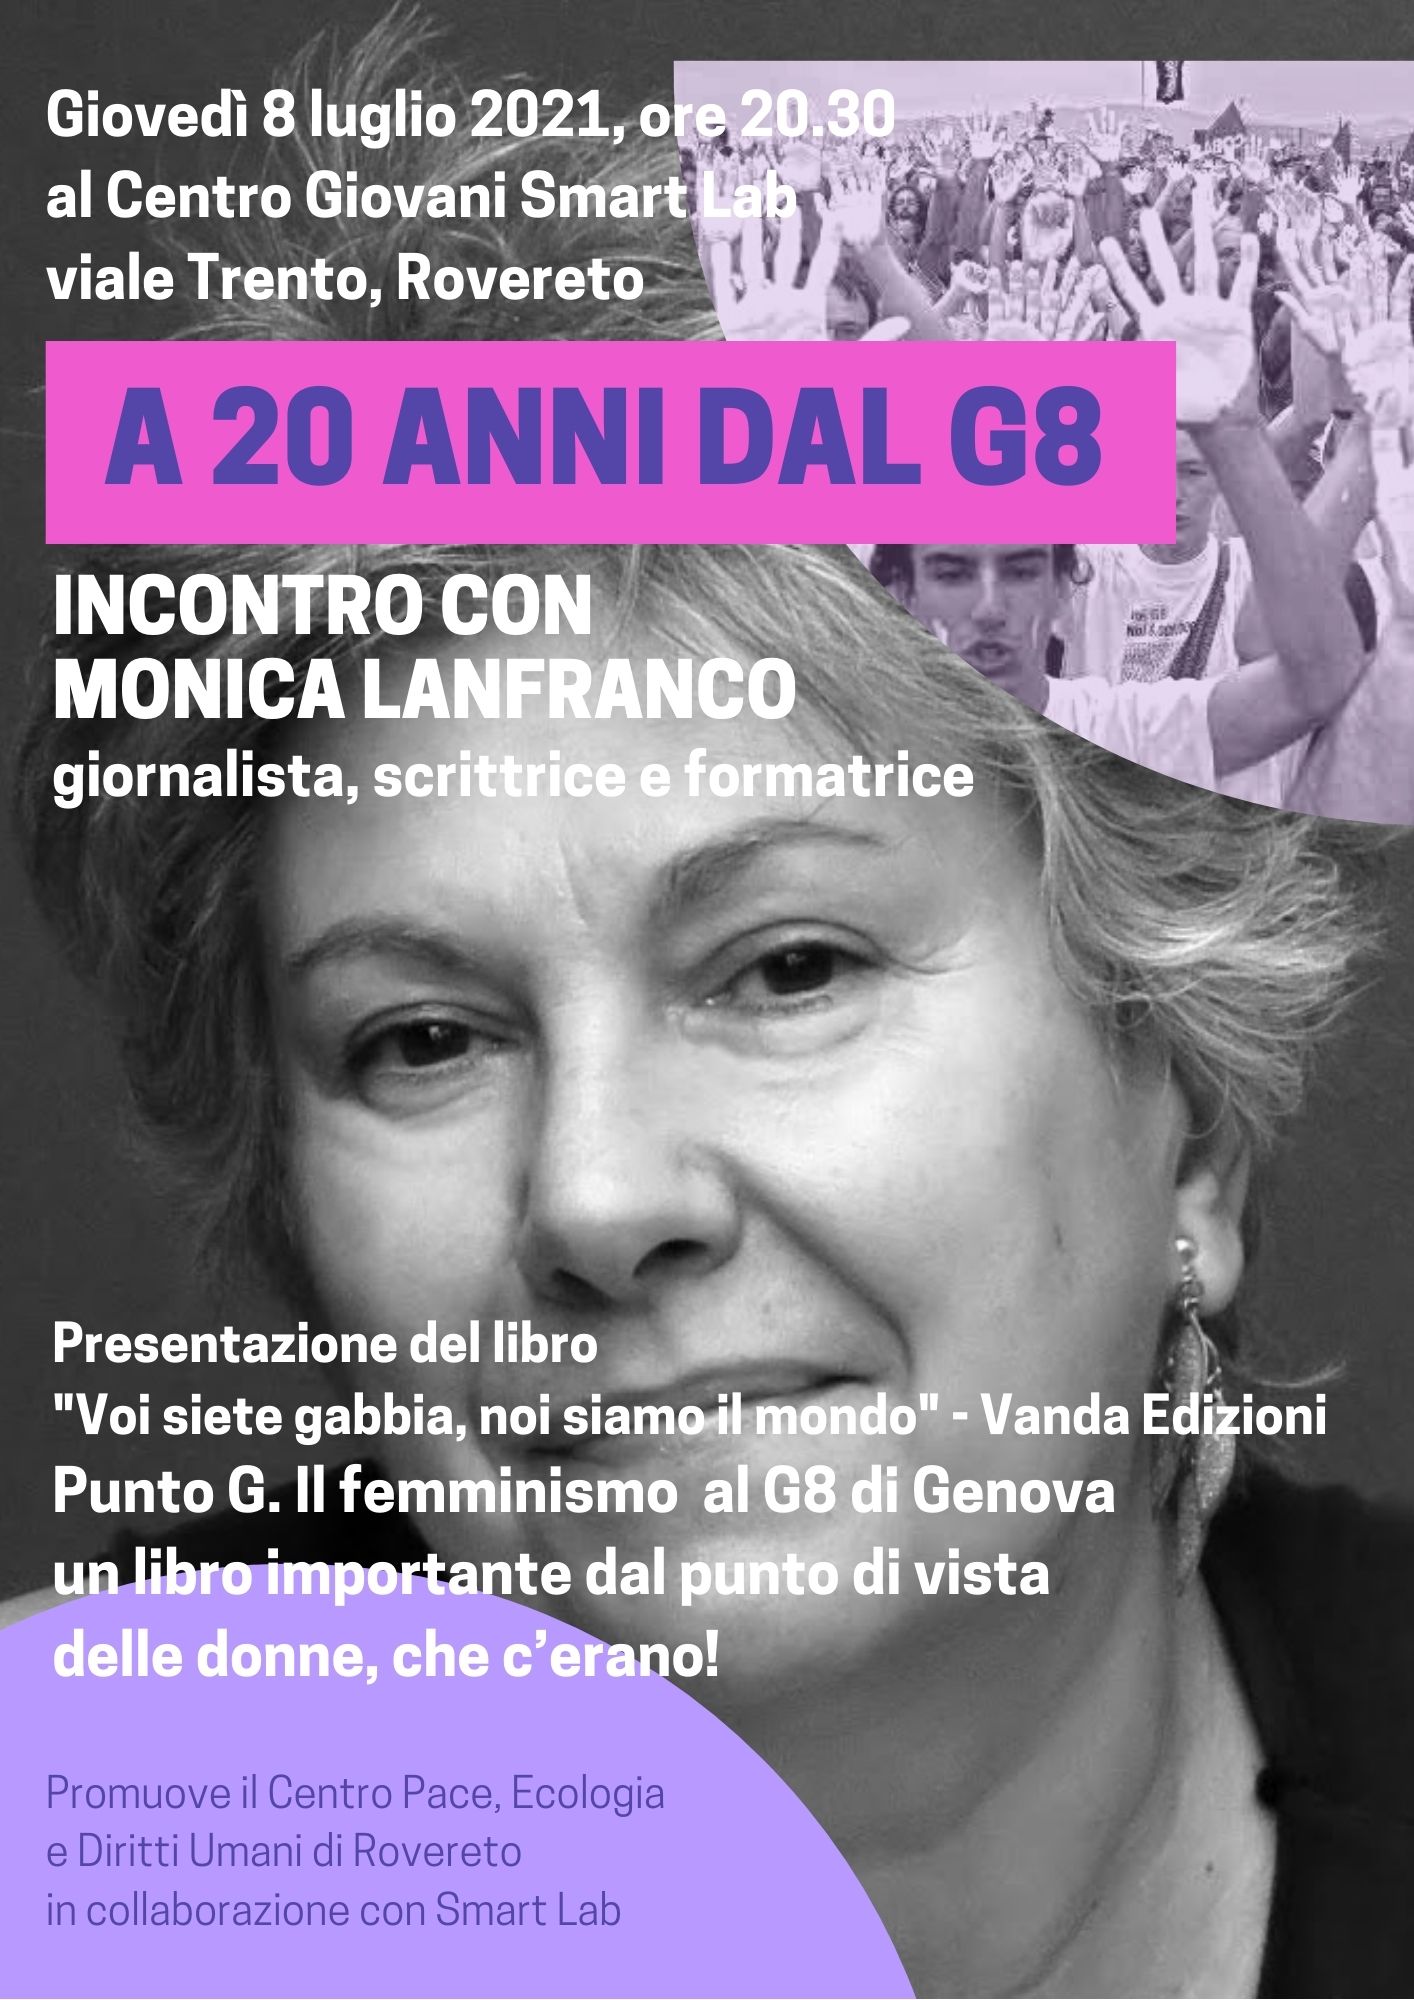 A vent’anni dal G8 di Genova, incontro con Monica Lanfranco